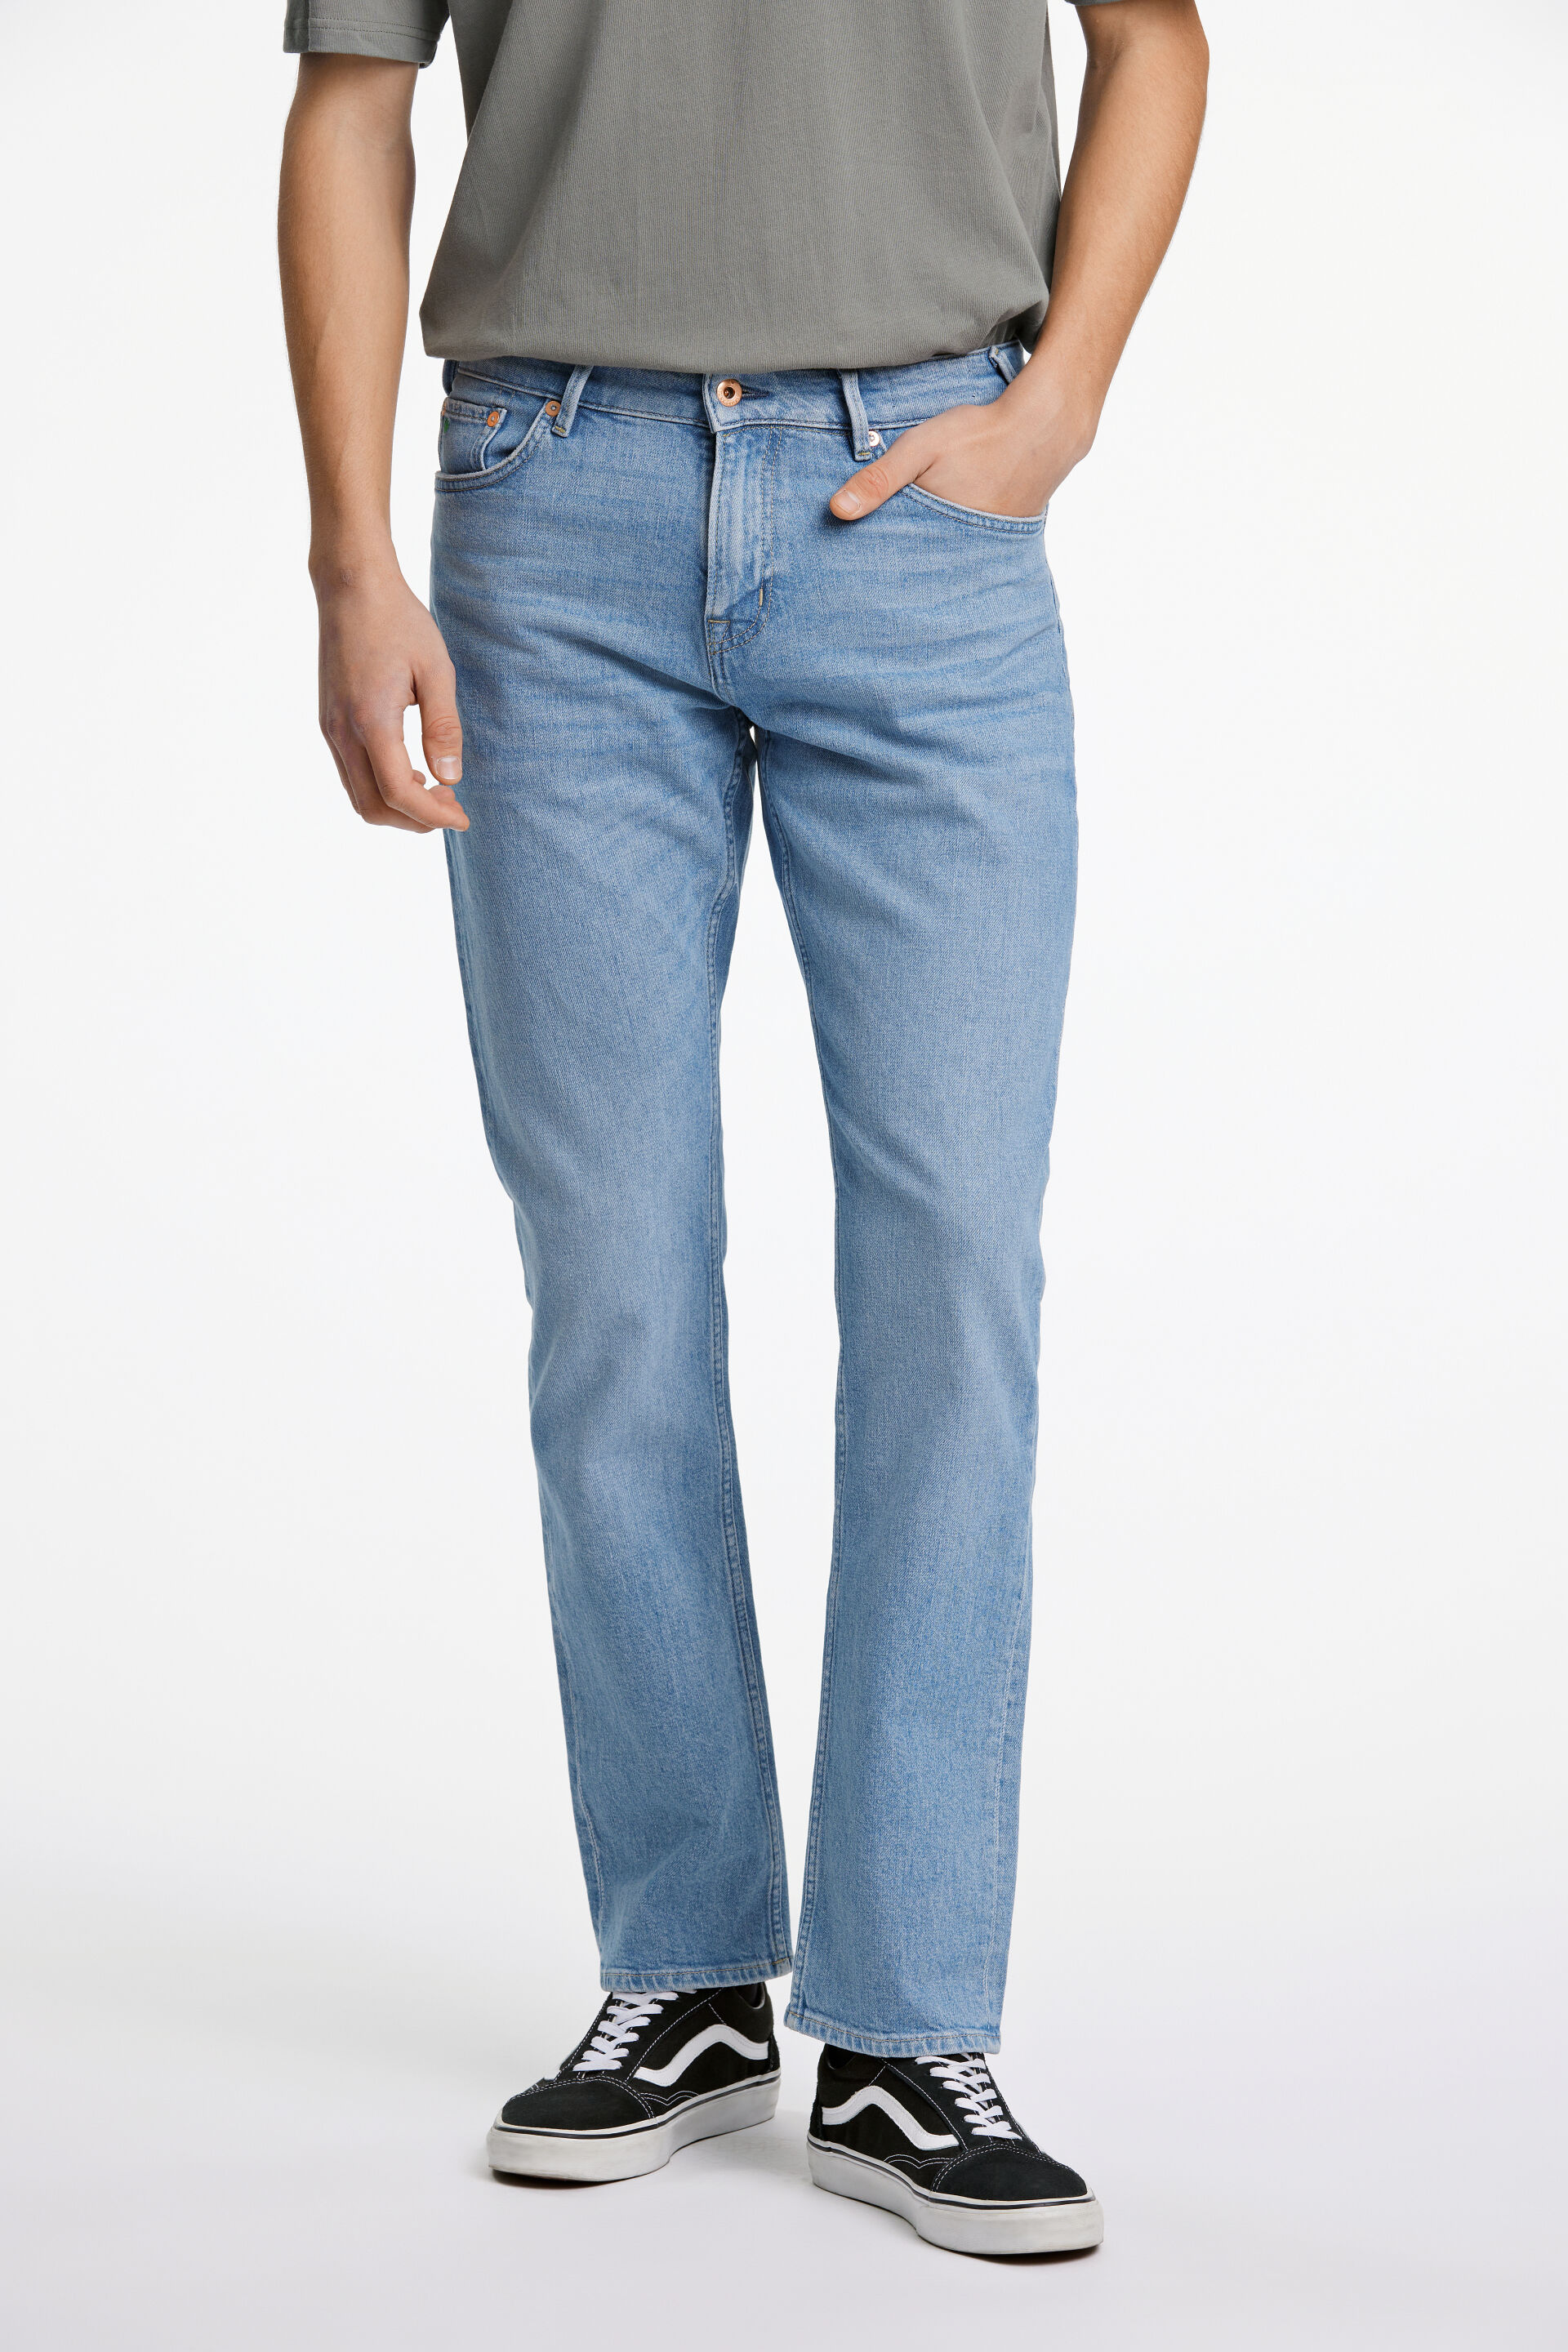 Junk de Luxe  Jeans 60-022018